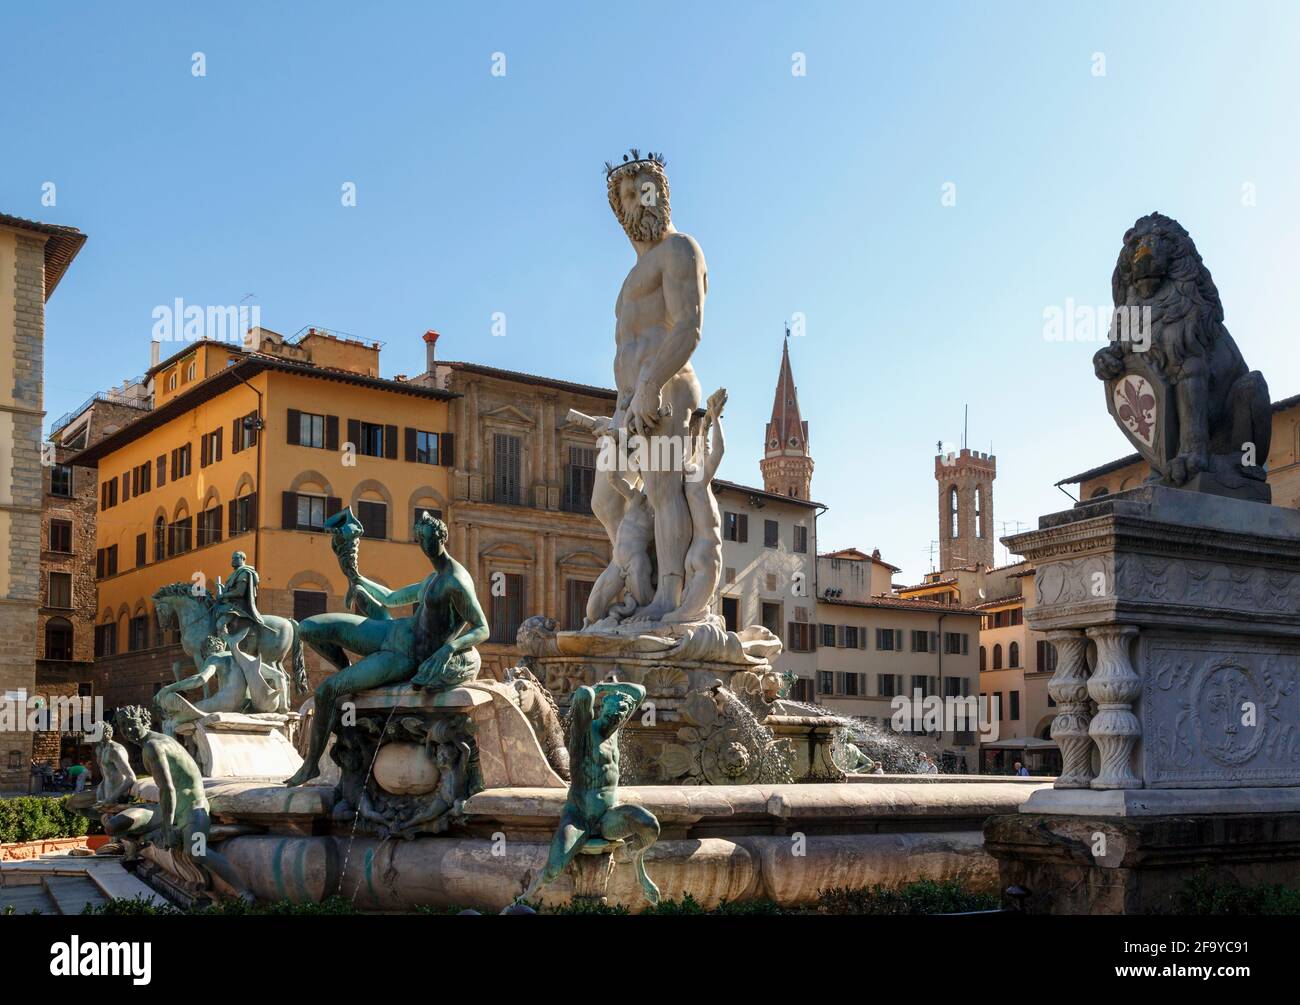 Florencia, Provincia de Florencia, Toscana, Italia. Fuente de Neptuno, Fontana di Nettuno, de Bartolomeo Ammannati, 1511 – 1592, en Piazza della Signoria. Foto de stock